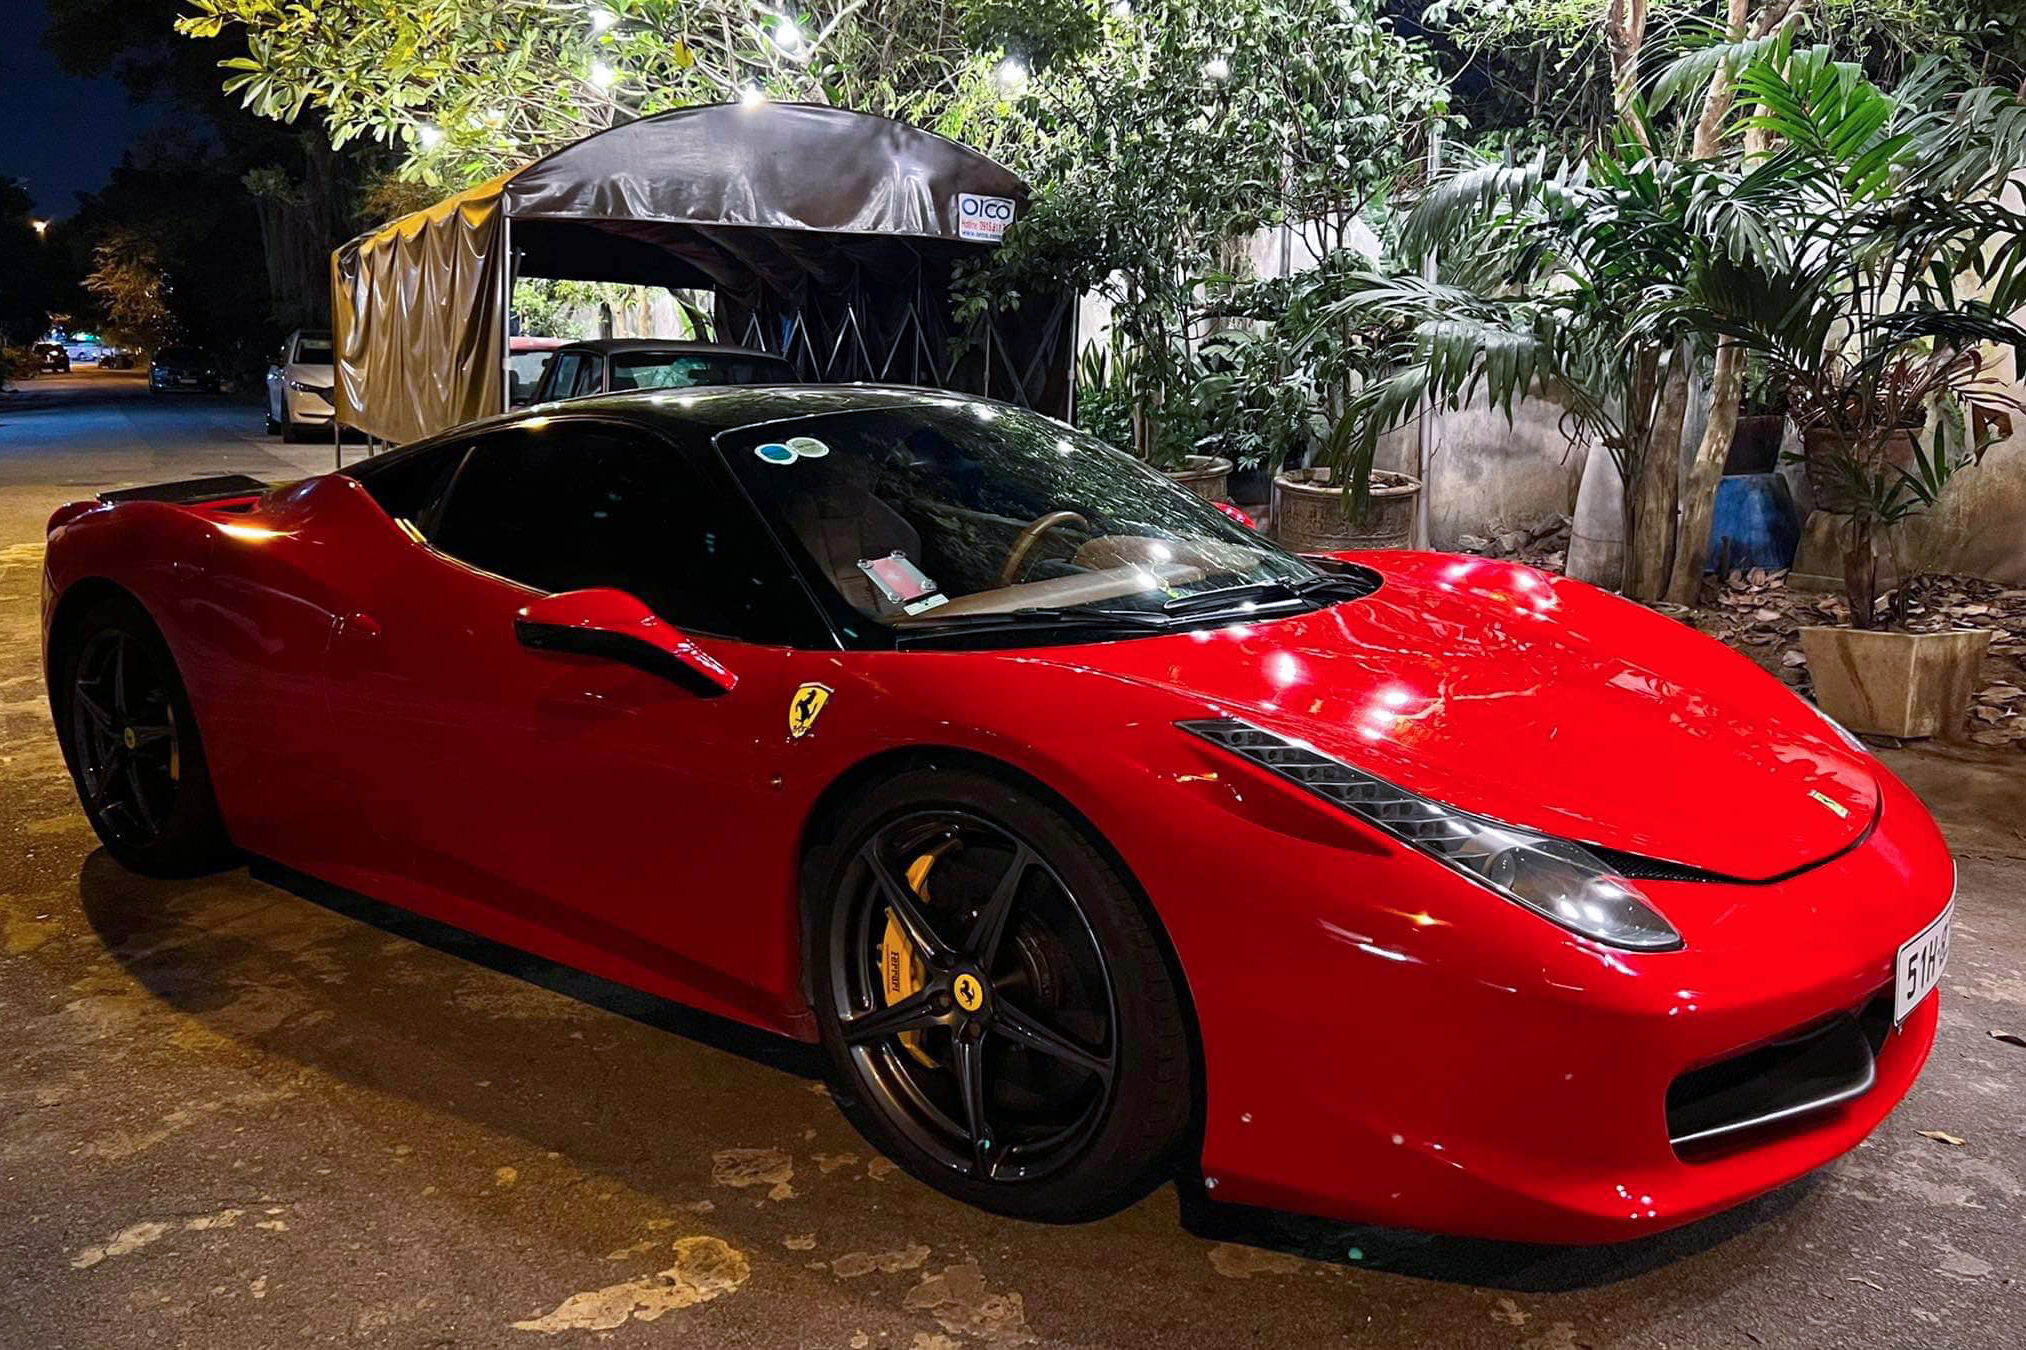 Ferrari 458 từng của CEO 9x Tống Đông Khuê bán cho Qua Vũ, đổi màu từ đỏ sang đen ferrari-458-italia-qua-vu-autodaily-2.jpg